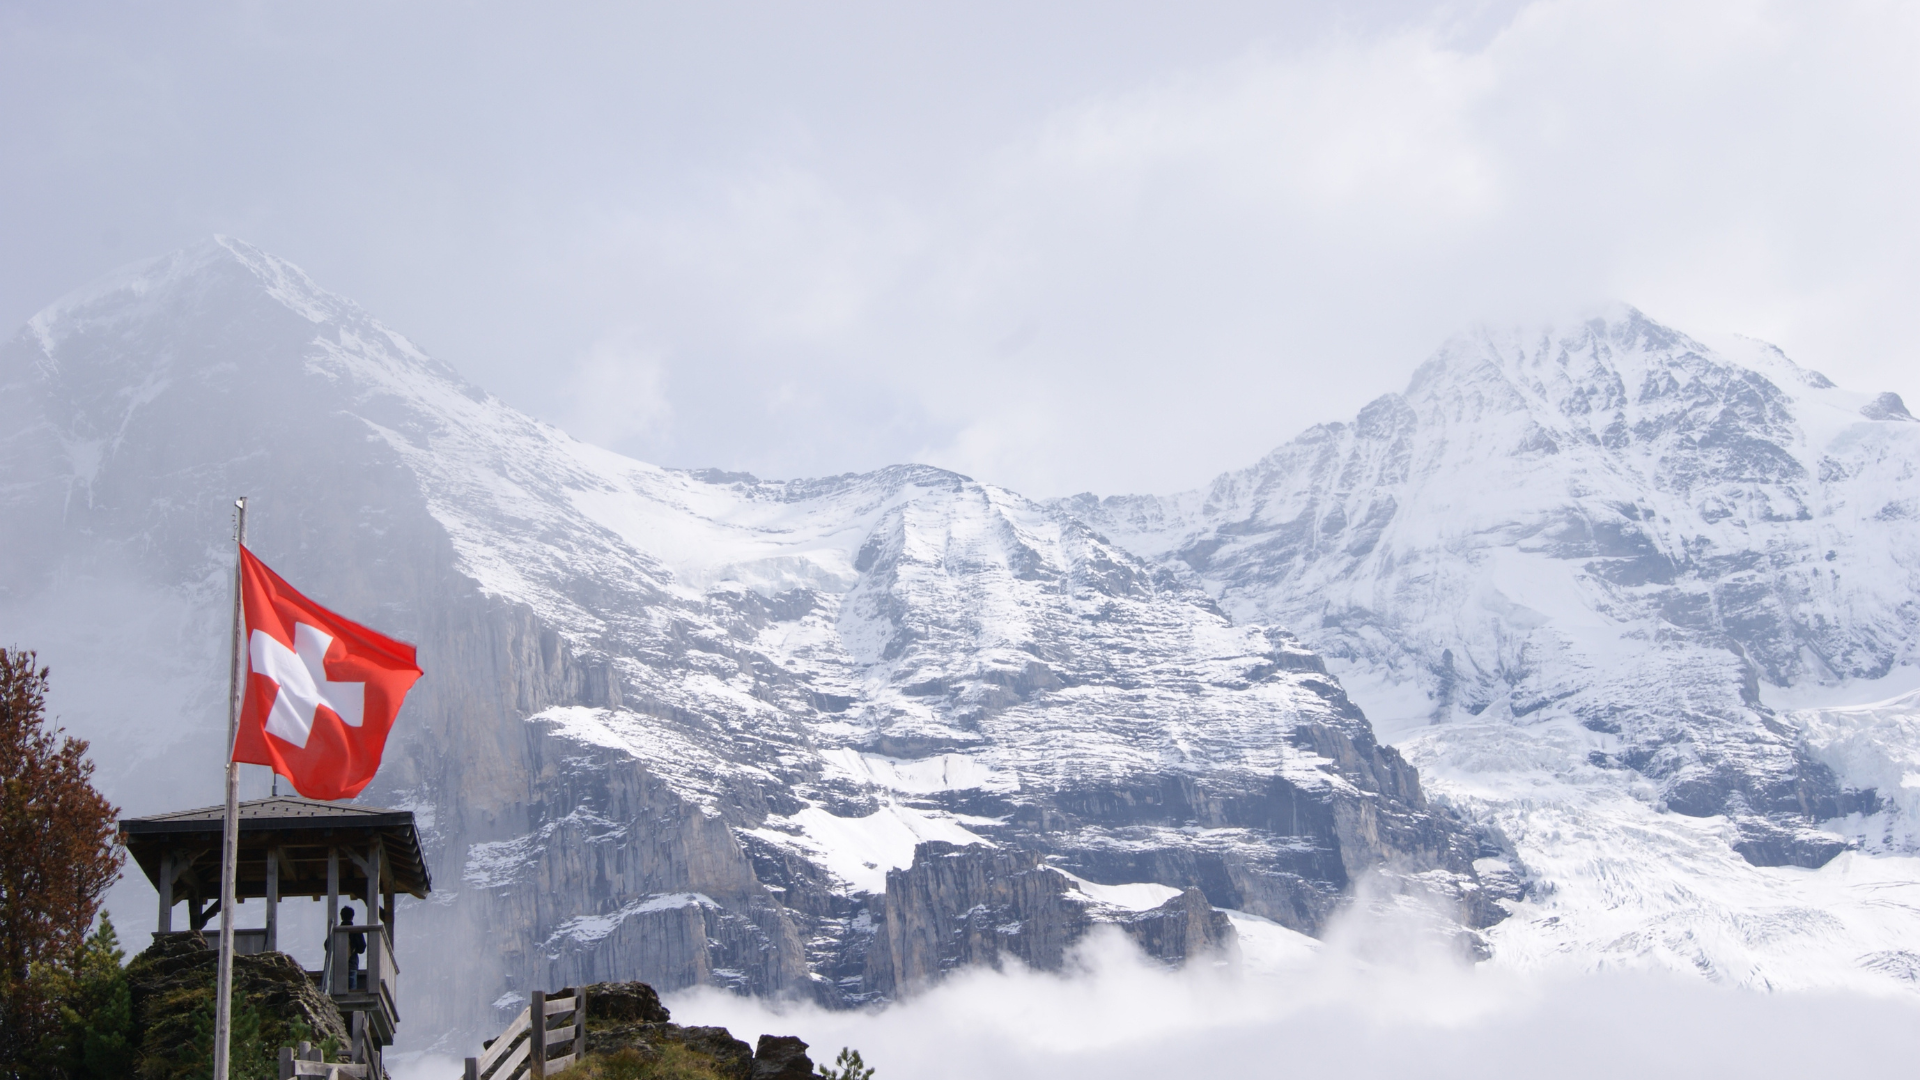 7 Best Ski Hotels in Switzerland